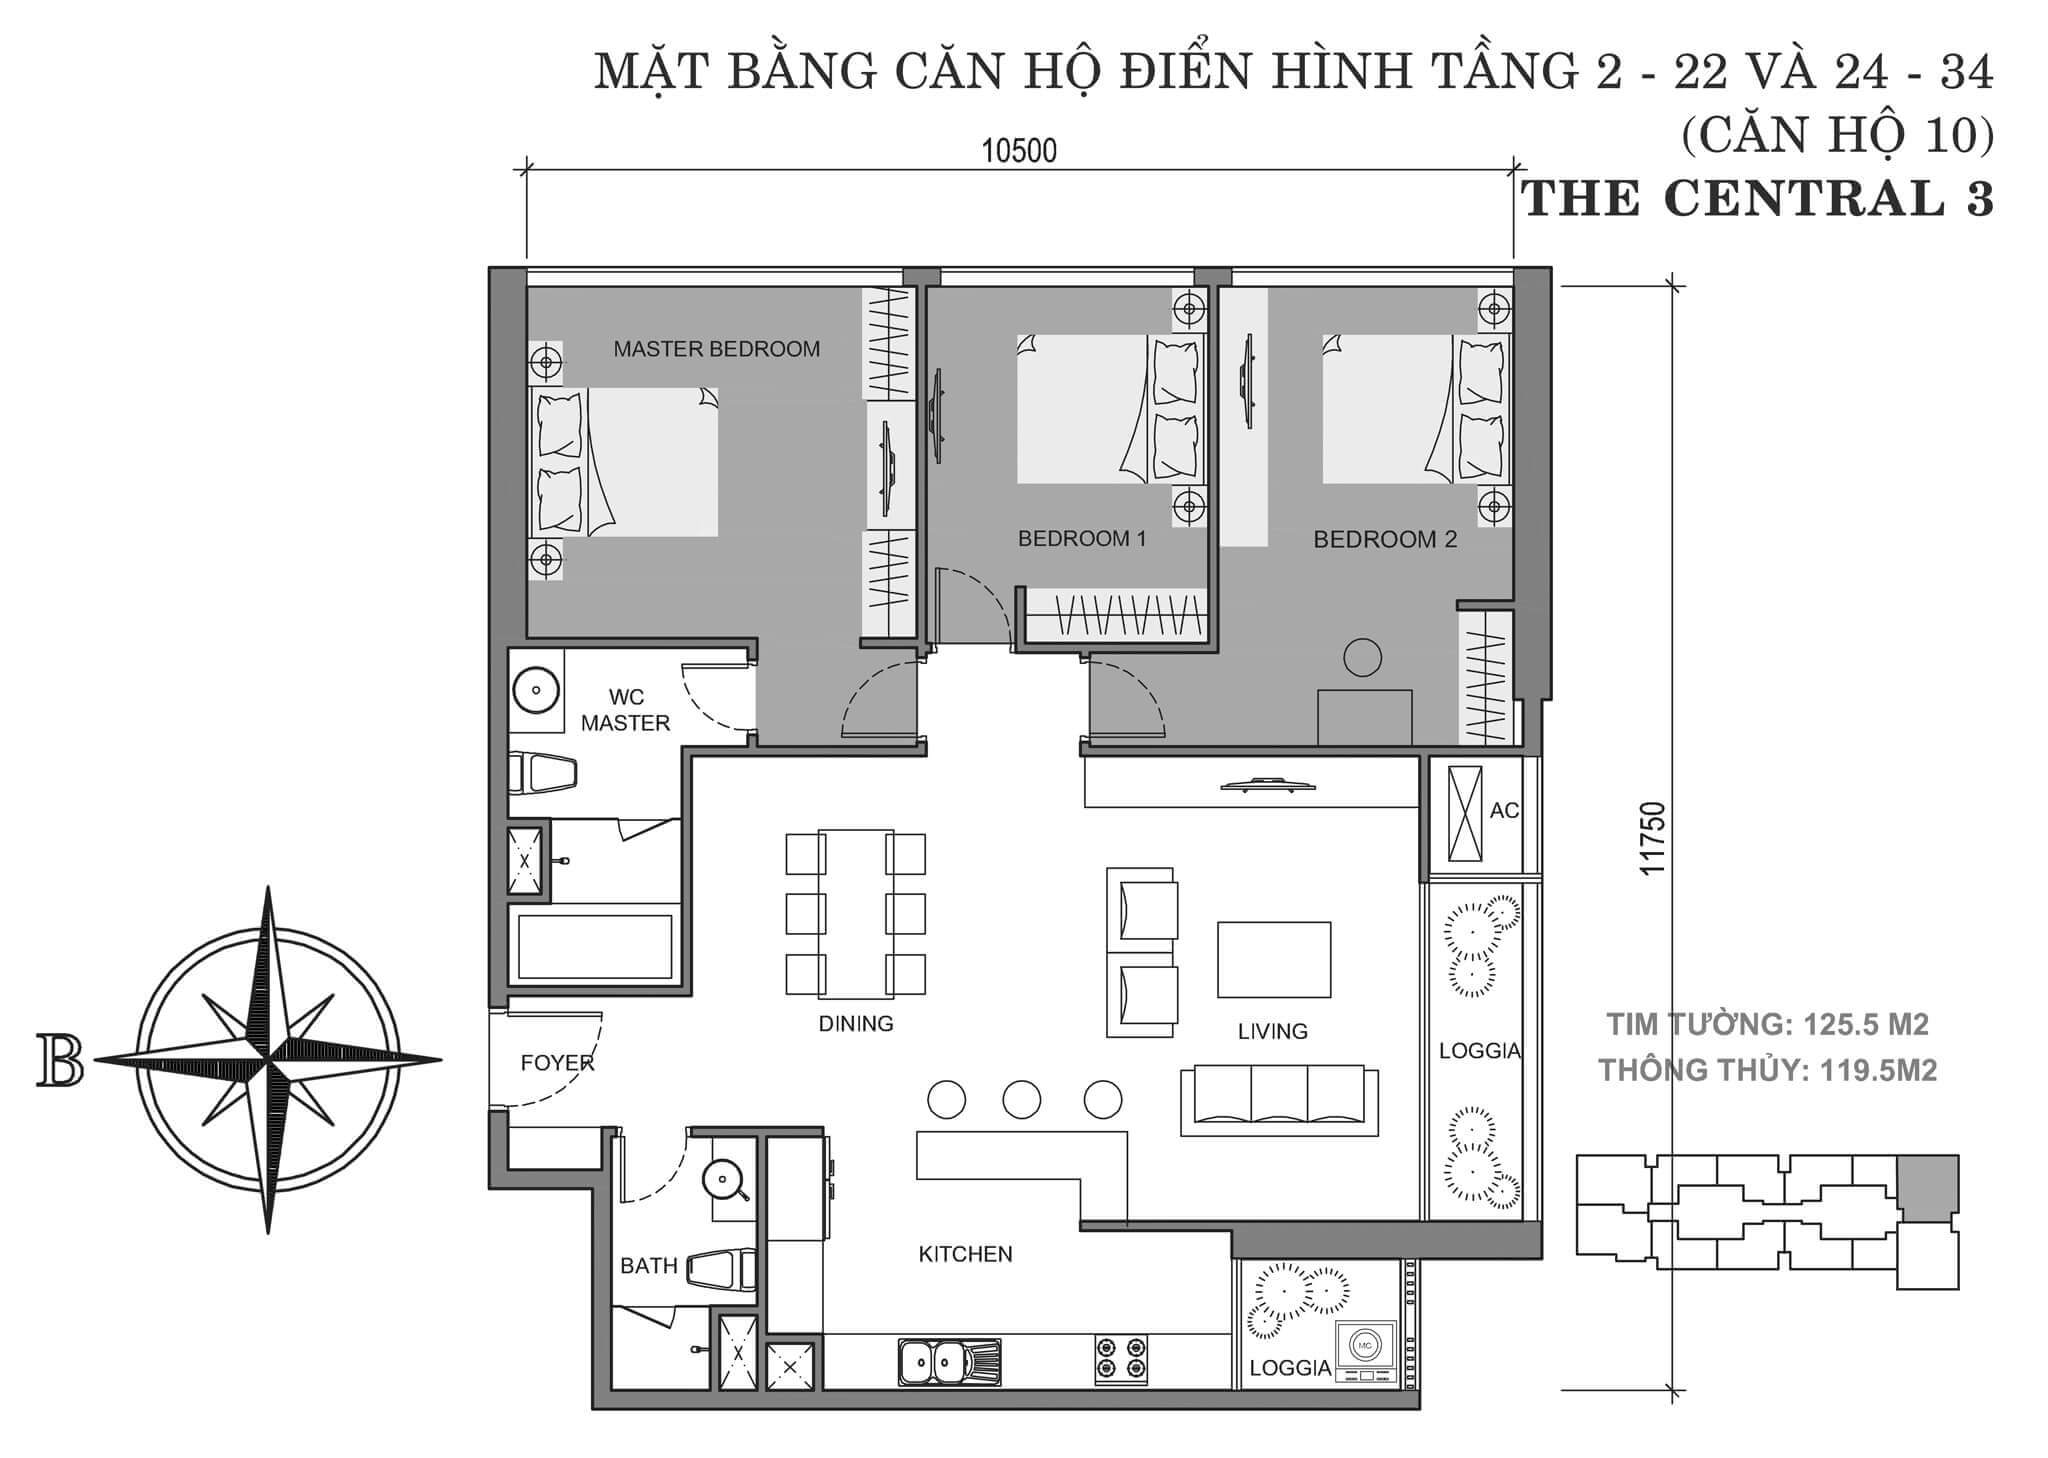 layout căn hộ số 10 tòa Central 3 tầng 2-34  